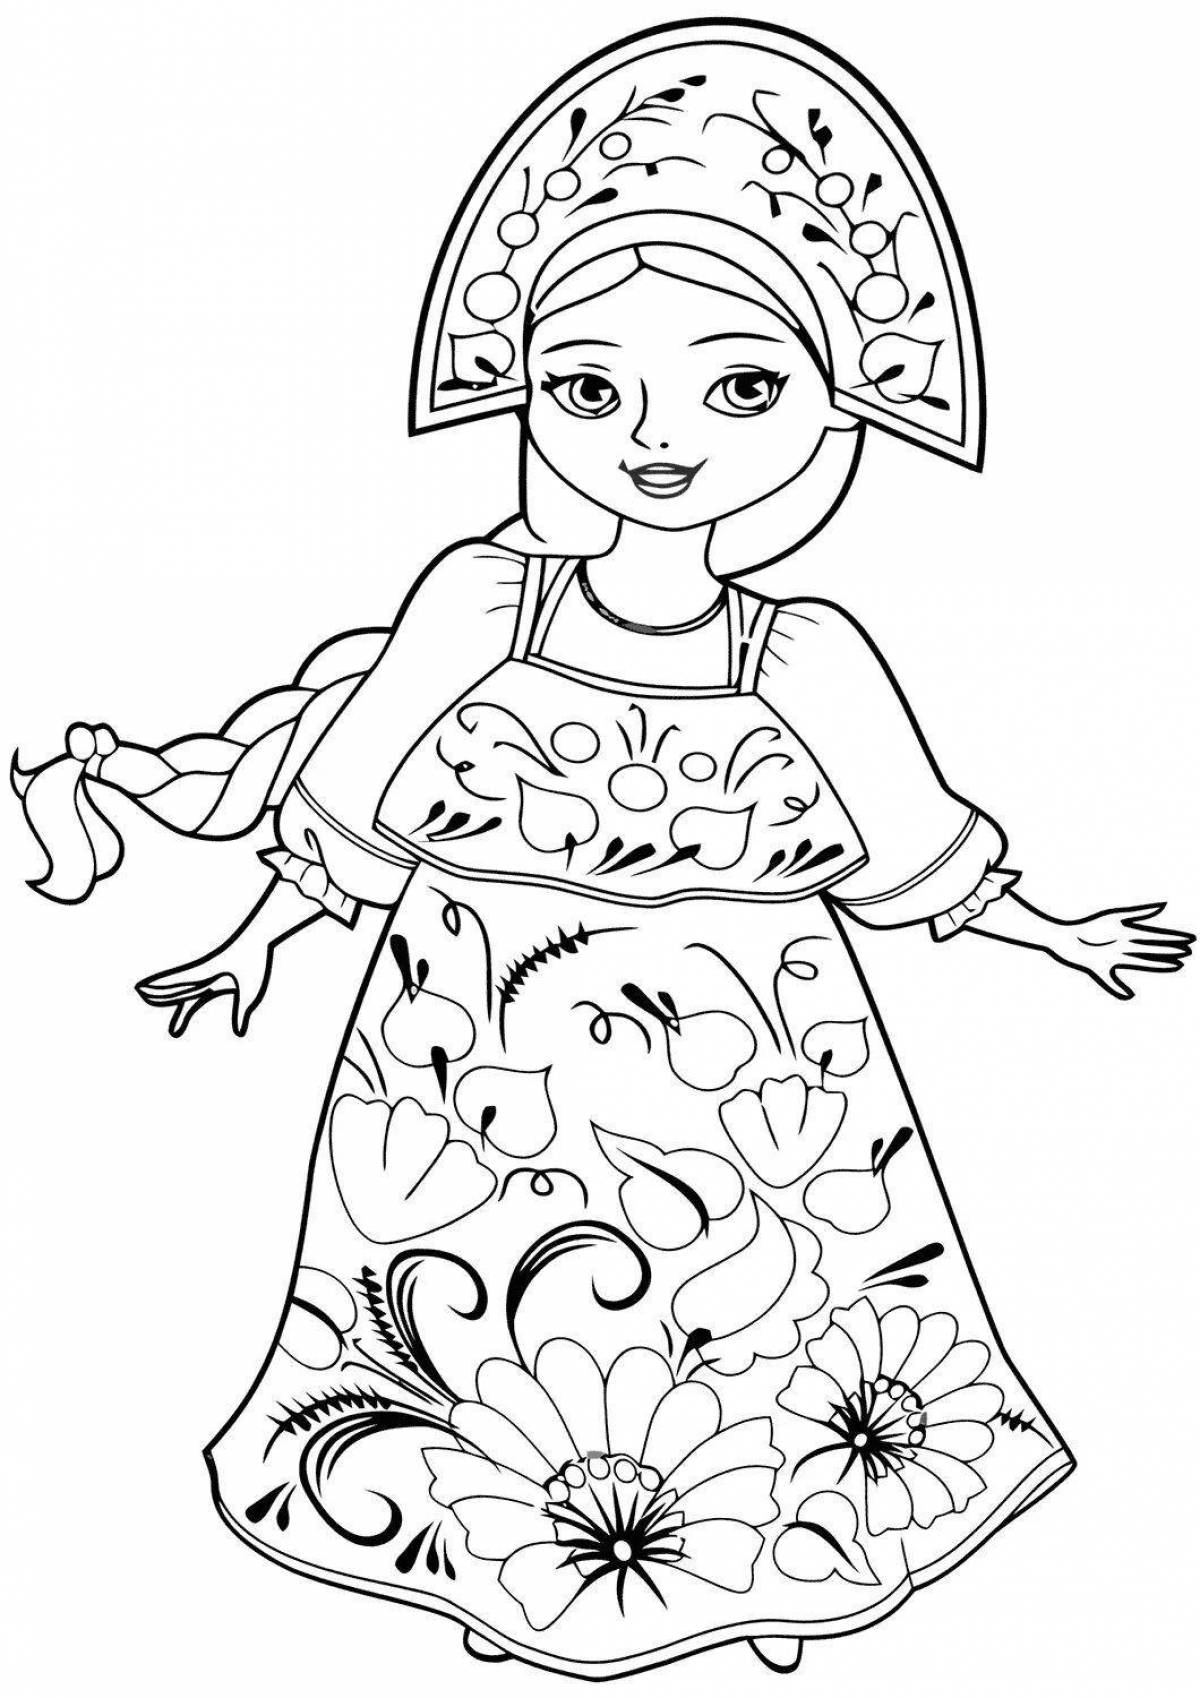 Экзотическая раскраска девочка в кокошнике